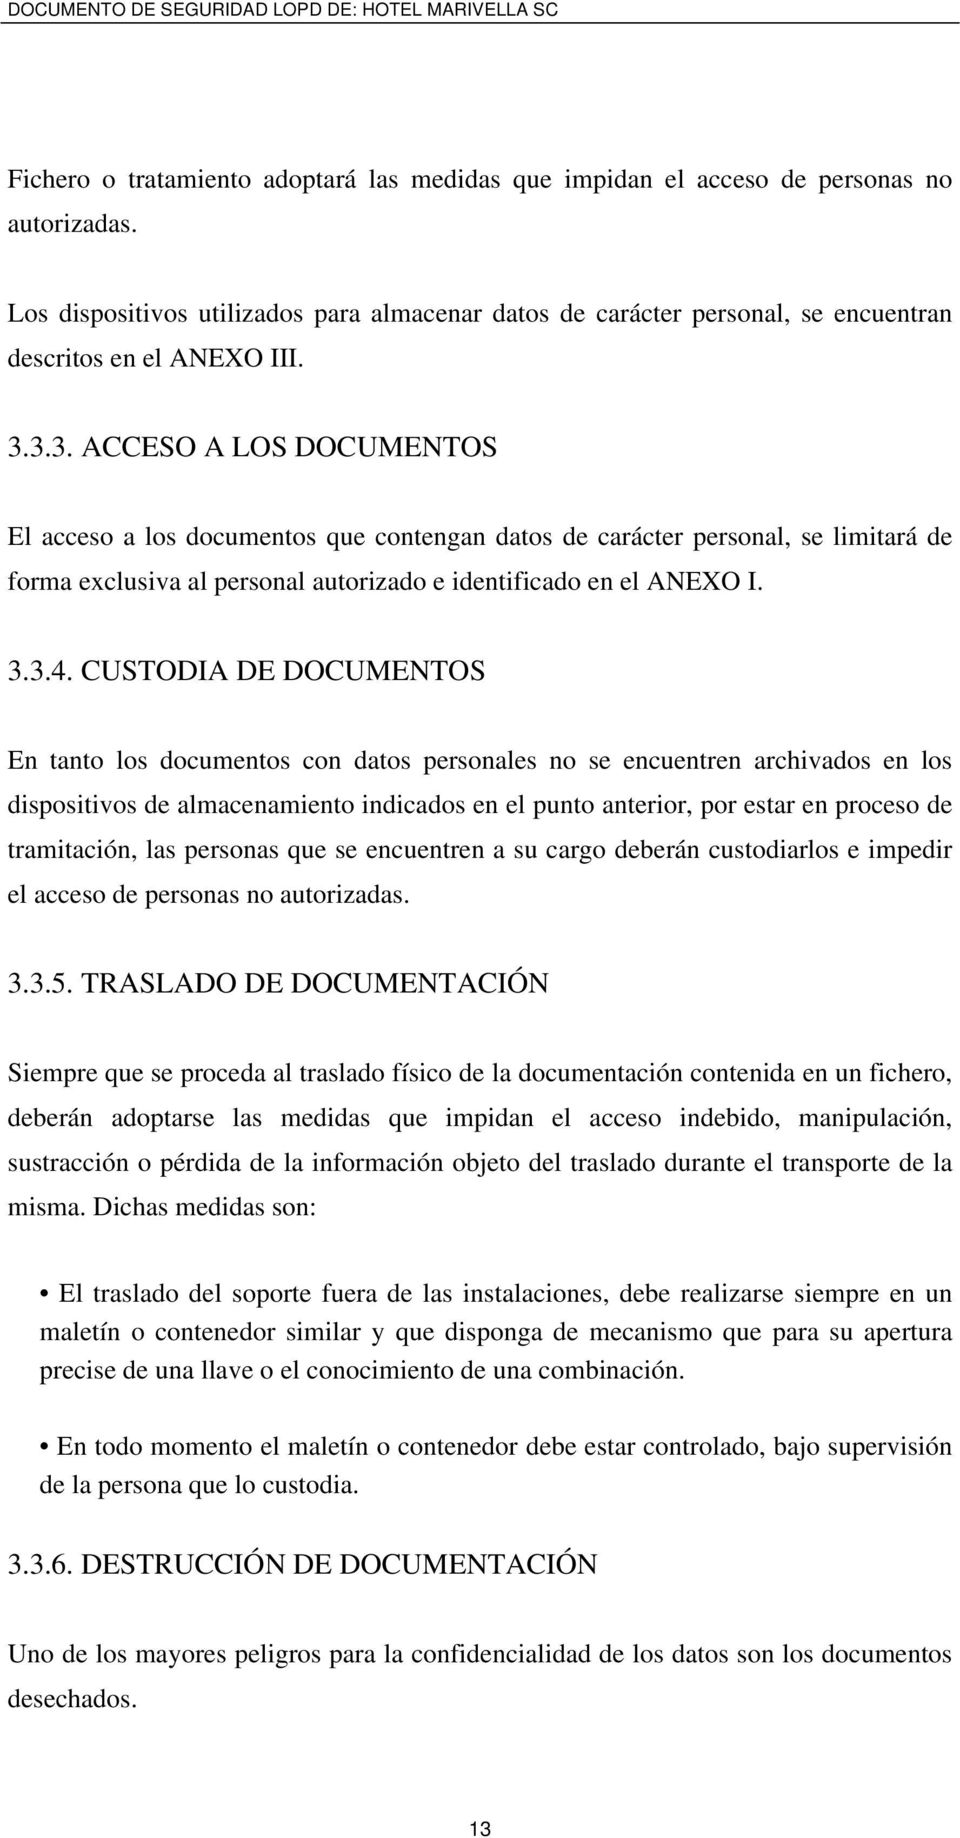 3.3. ACCESO A LOS DOCUMENTOS El acceso a los documentos que contengan datos de carácter personal, se limitará de forma exclusiva al personal autorizado e identificado en el ANEXO I. 3.3.4.